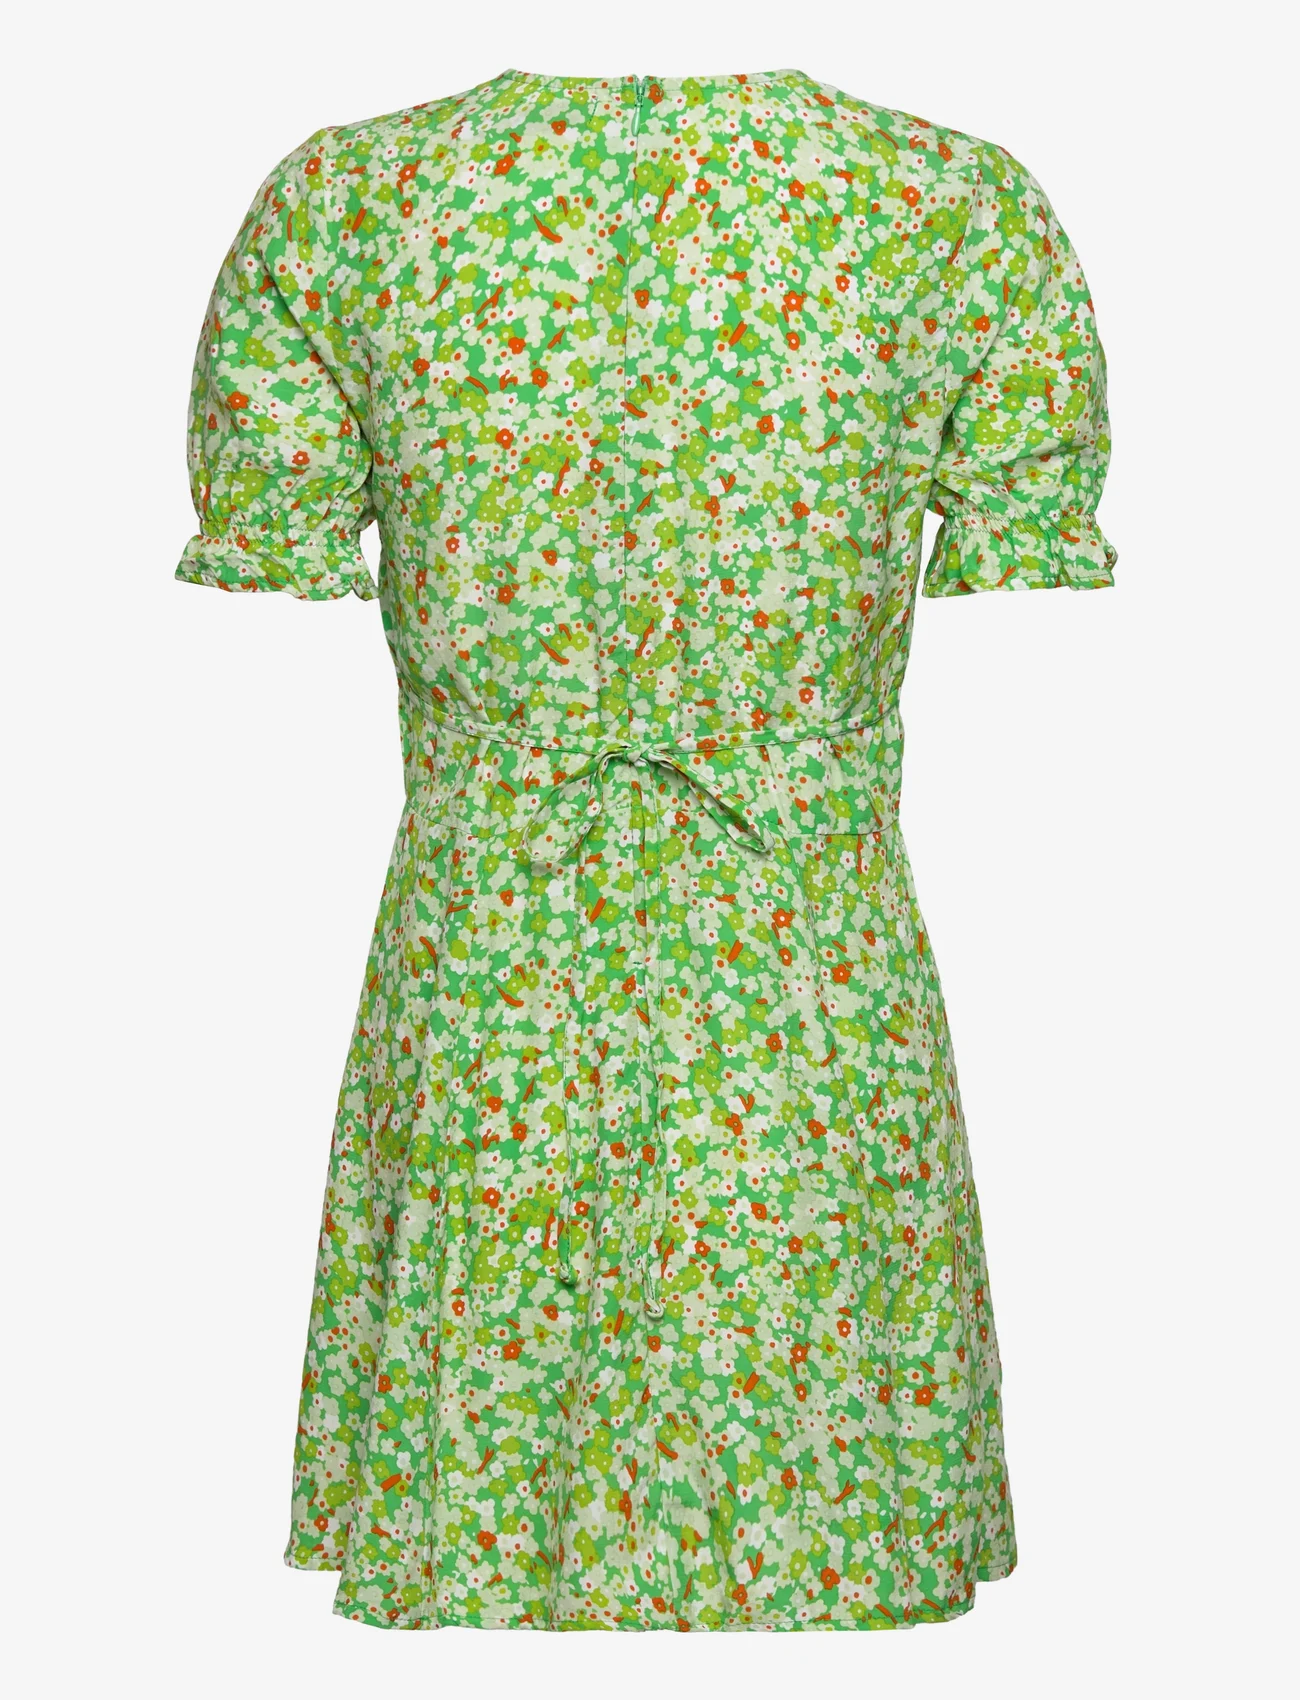 Faithfull The Brand - LA BELLE MINI DRESS - sommerkjoler - lou floral print - green - 1